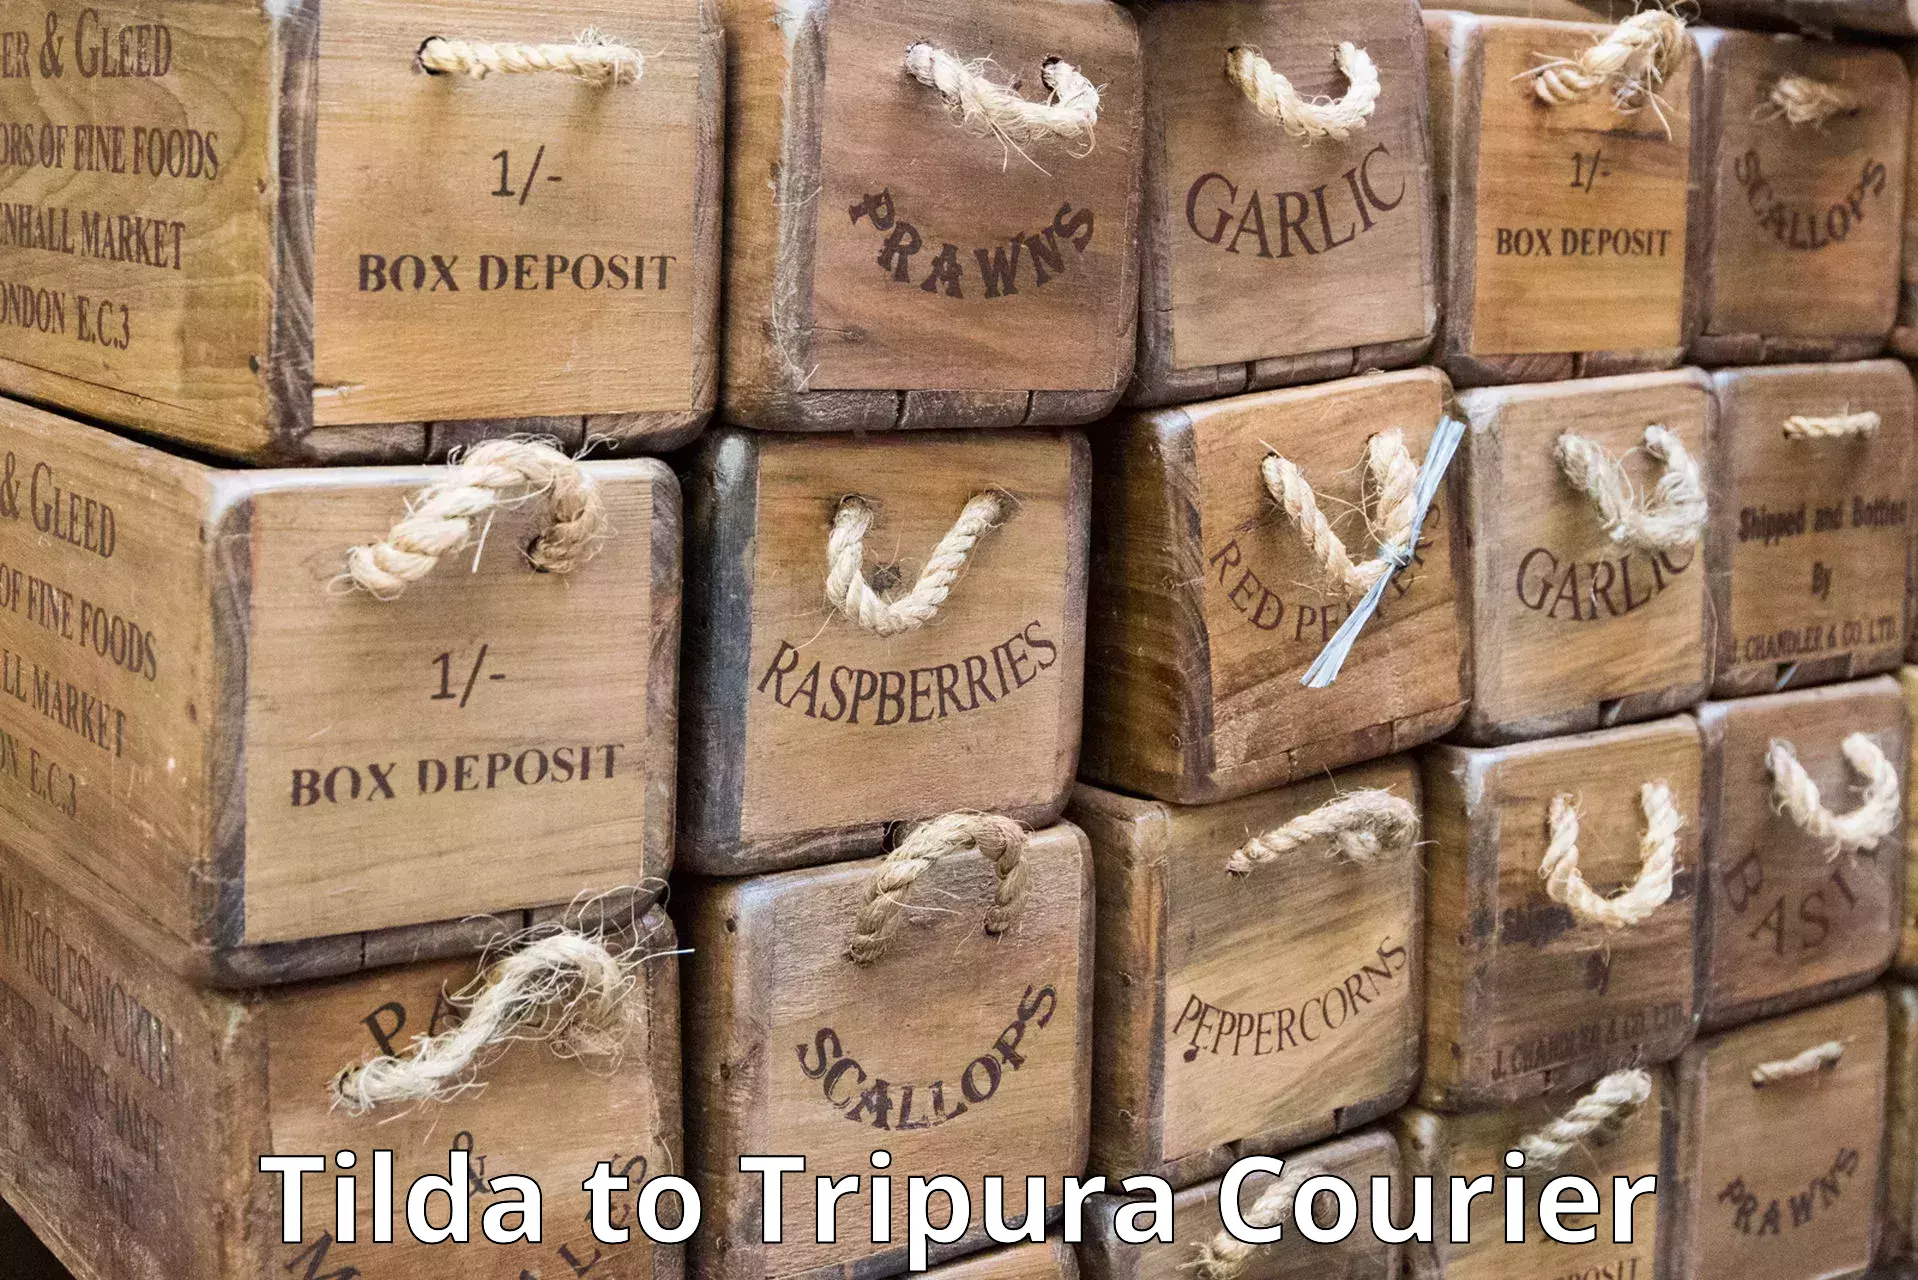 Courier dispatch services Tilda to IIIT Agartala